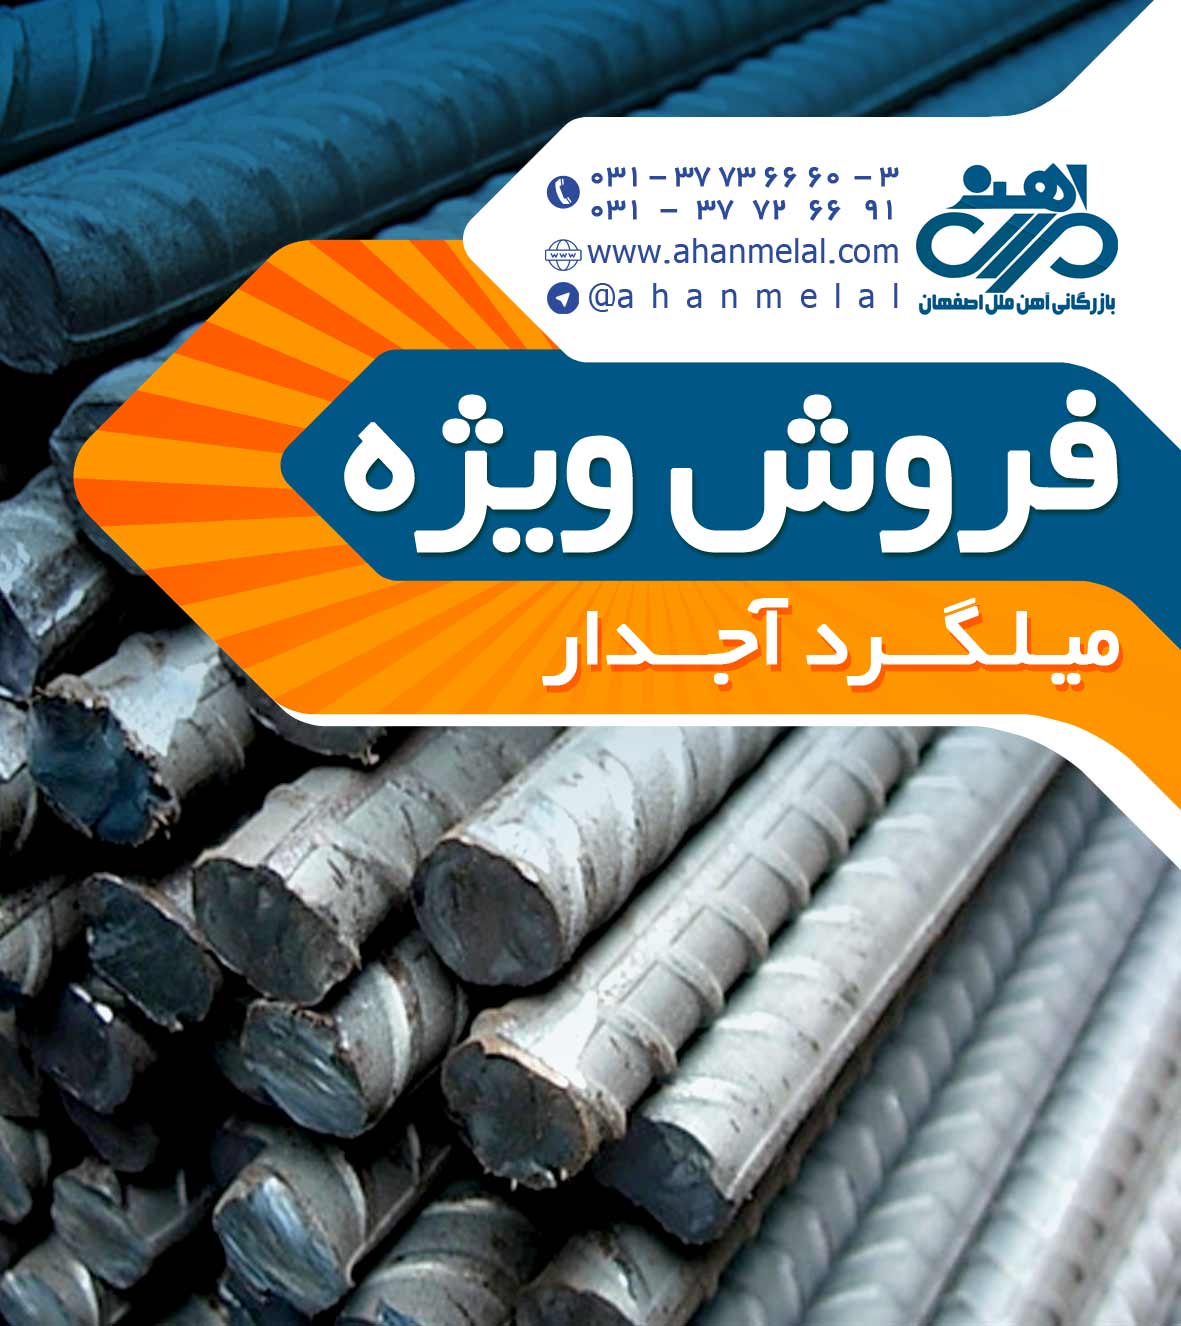 فروش ویژه انواع آهن و میلگرد در آهن ملل اصفهان